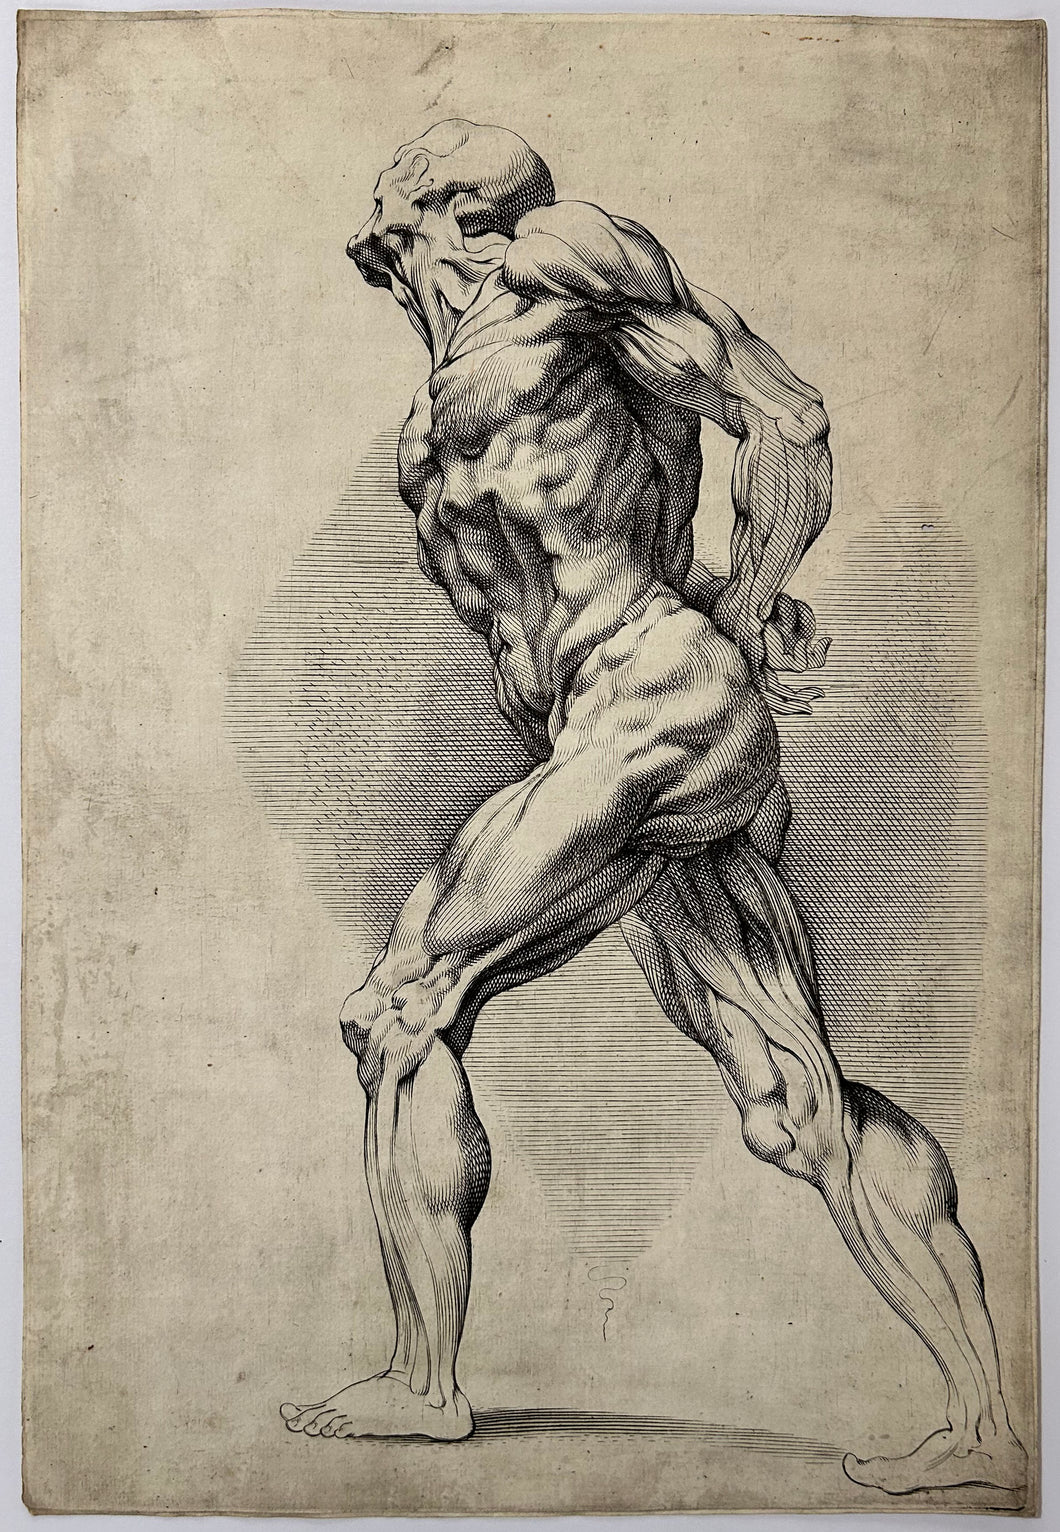 Etude anatomique d'un homme debout. c.1630.